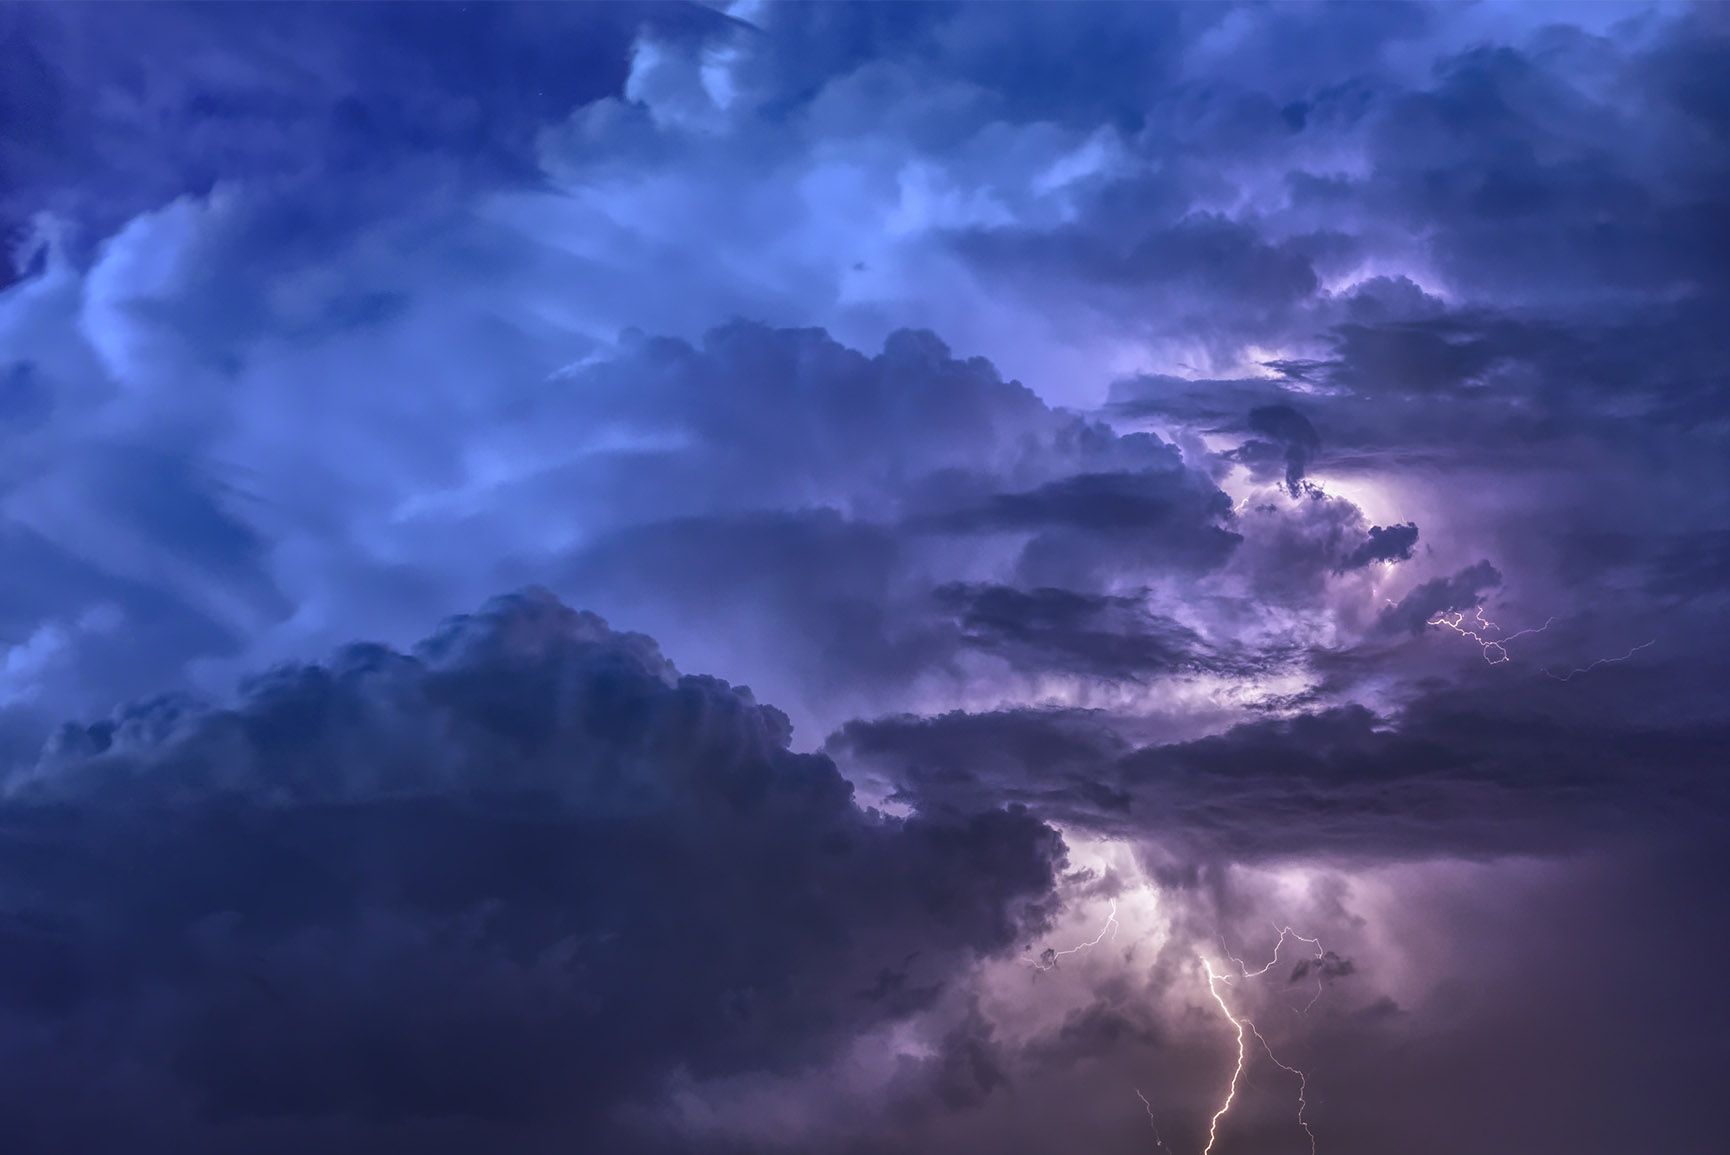 A lightning bolt strikes the sky during an intense storm - Cloud